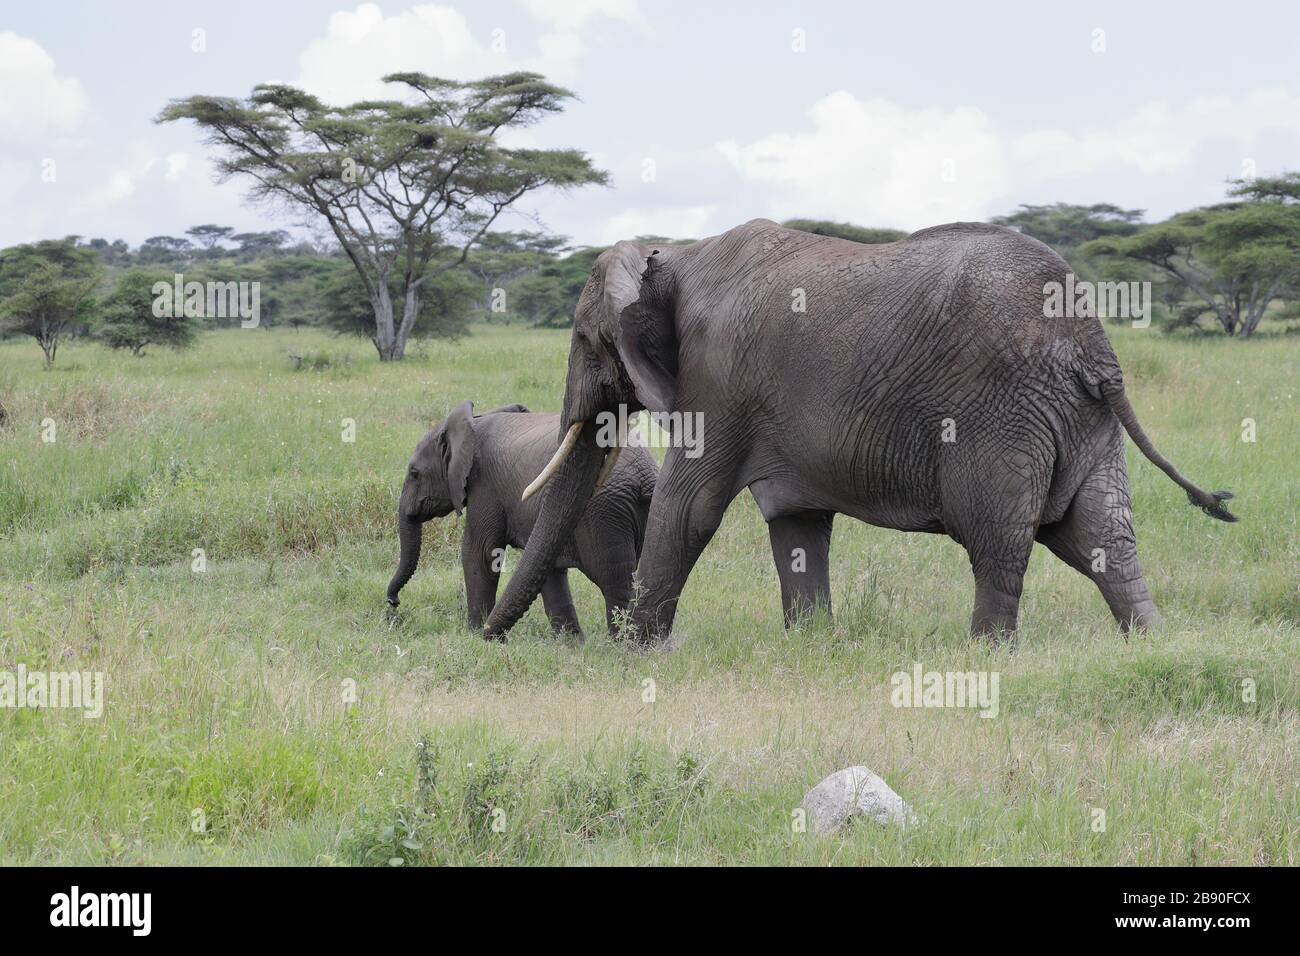 L'éléphant de brousse africain, également connu sous le nom d'éléphant de savane africaine, est le plus grand animal terrestre vivant. Banque D'Images